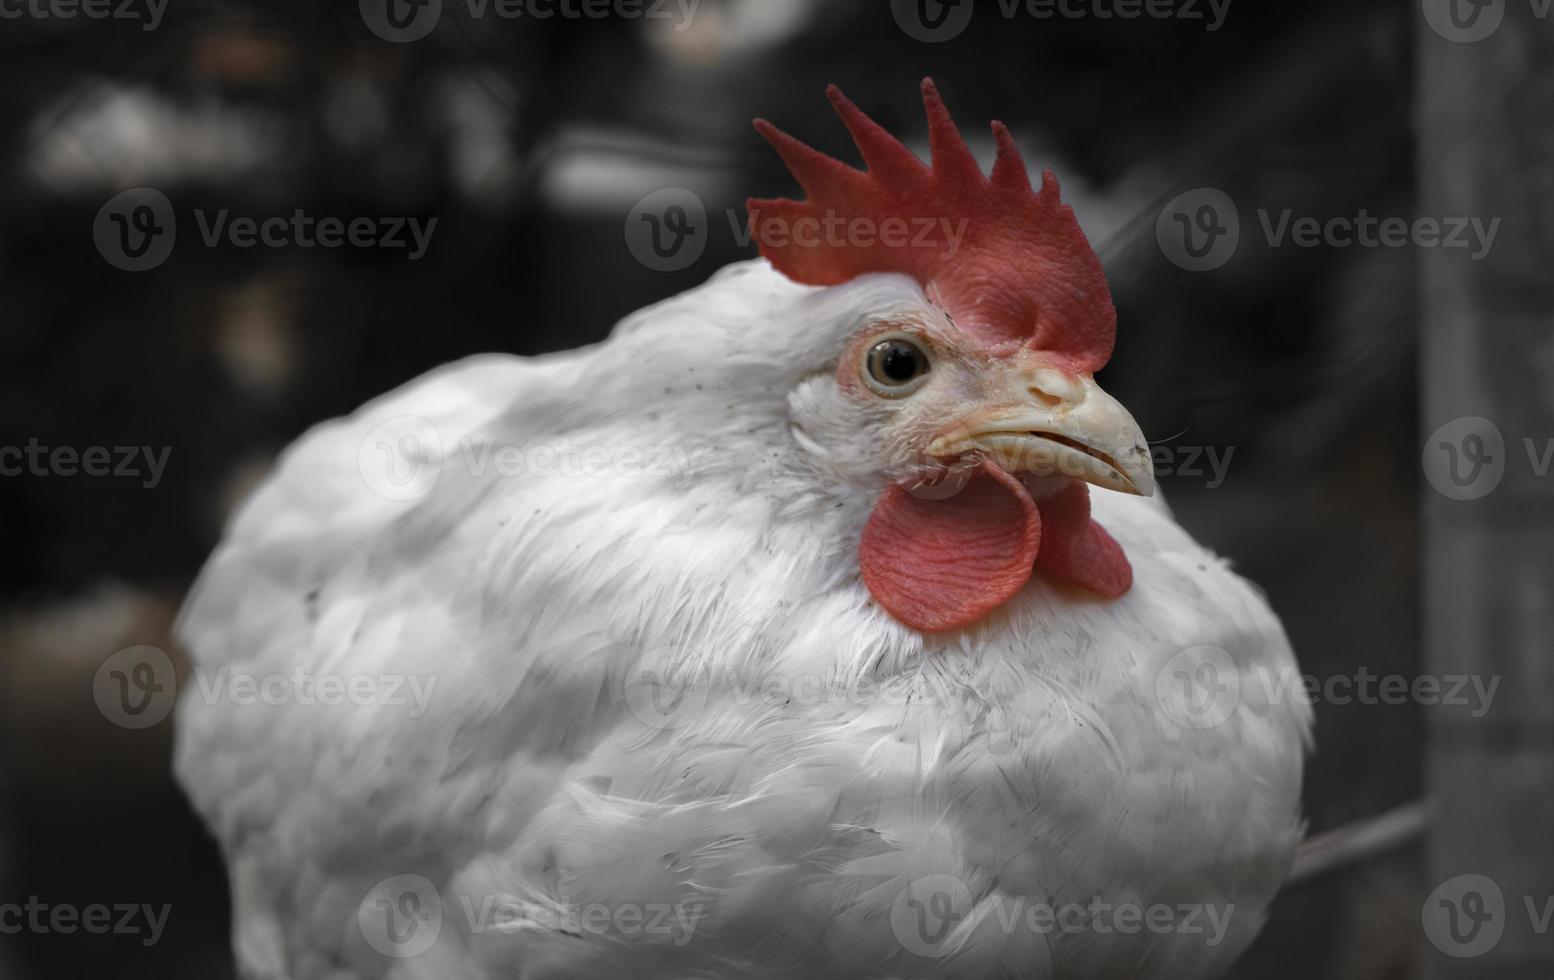 poulets de ferme blancs regardant curieusement la caméra photo